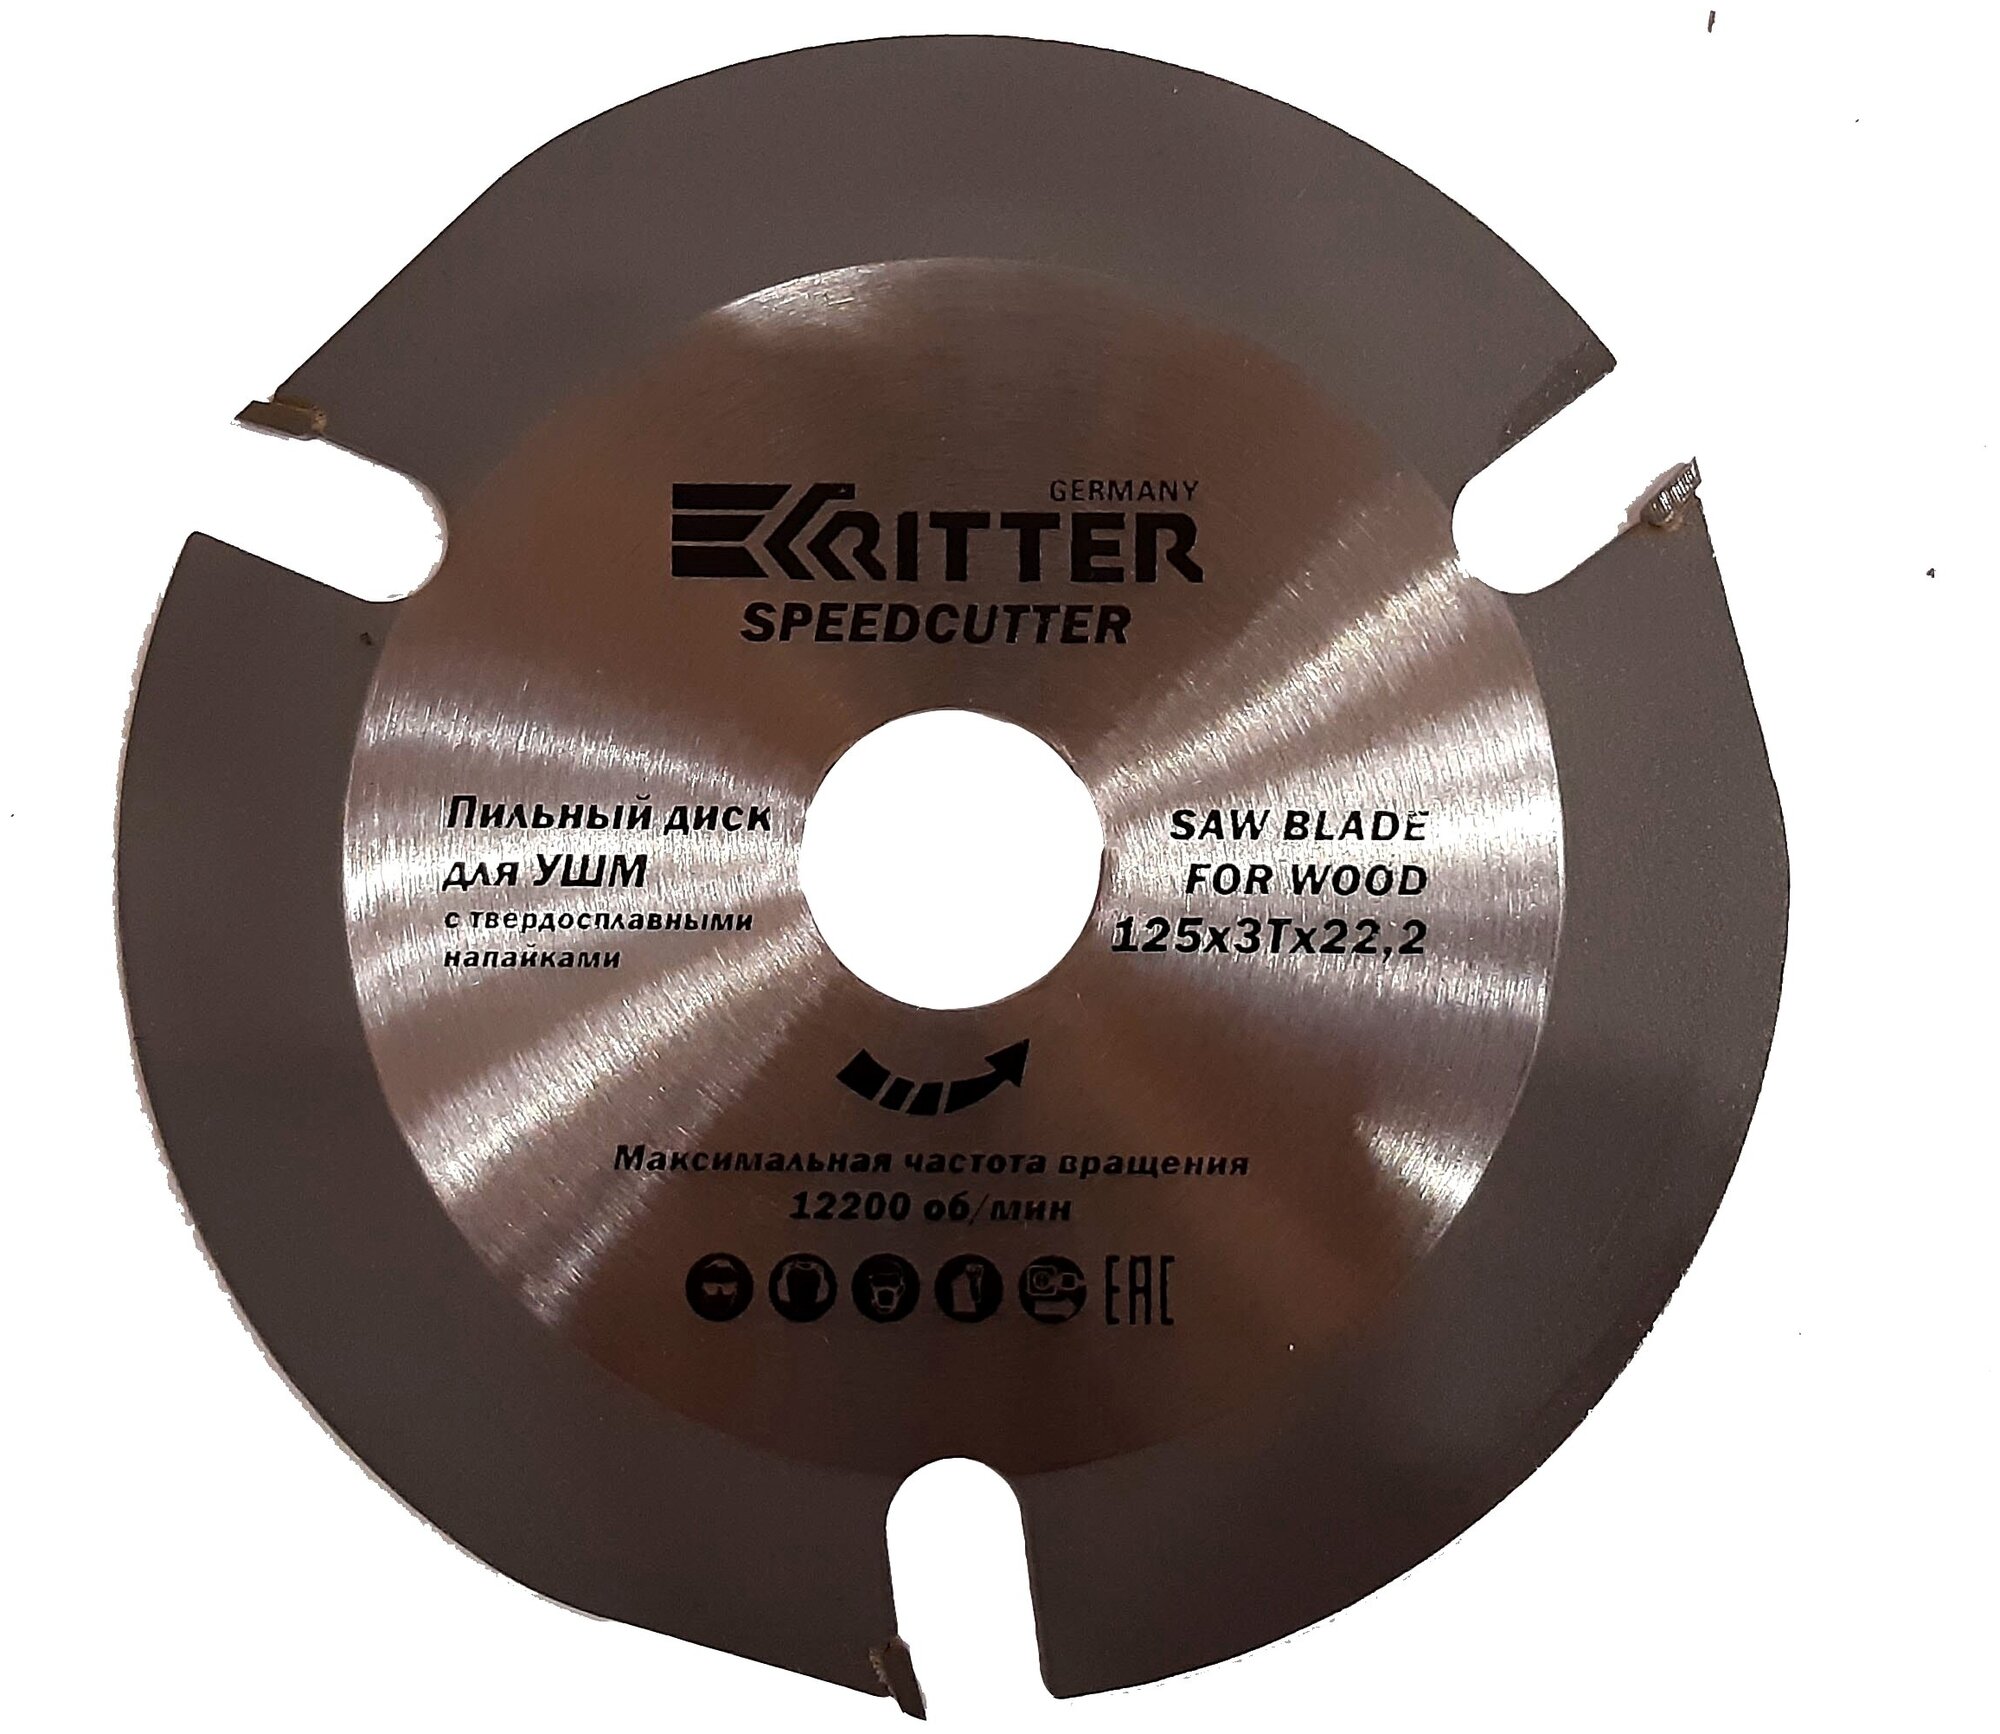 Диск пильный Ritter SpeedCutter 125х22,2 3T тв. зуба (по дереву, пластику, гипсокартону) для УШМ